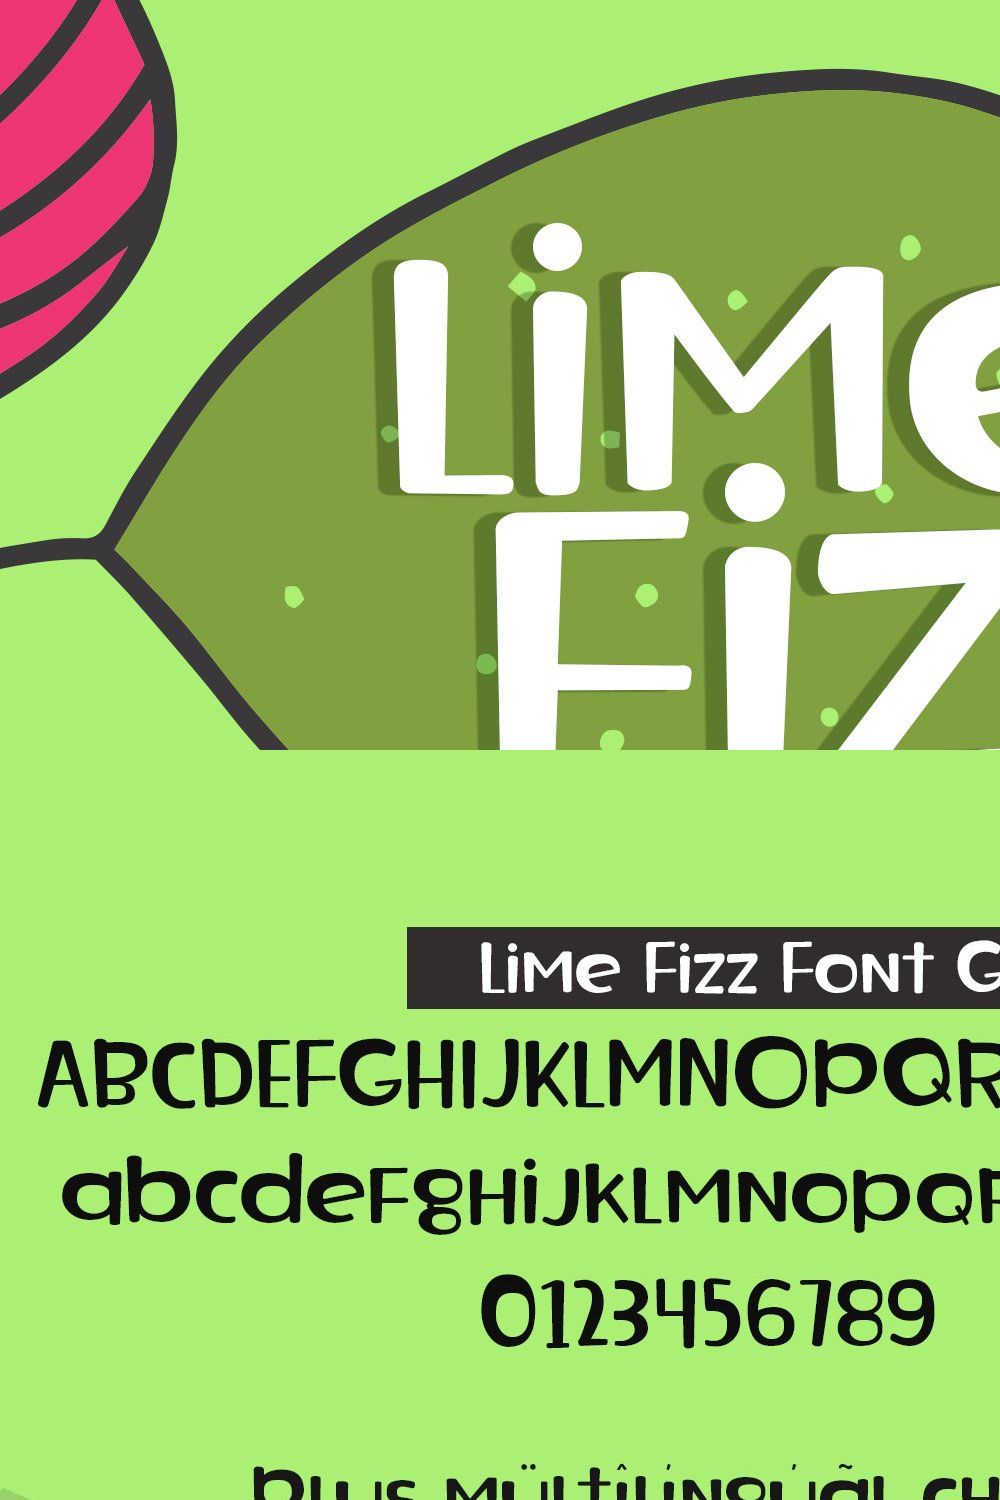 Lime Fizz Sans Serif Font pinterest preview image.